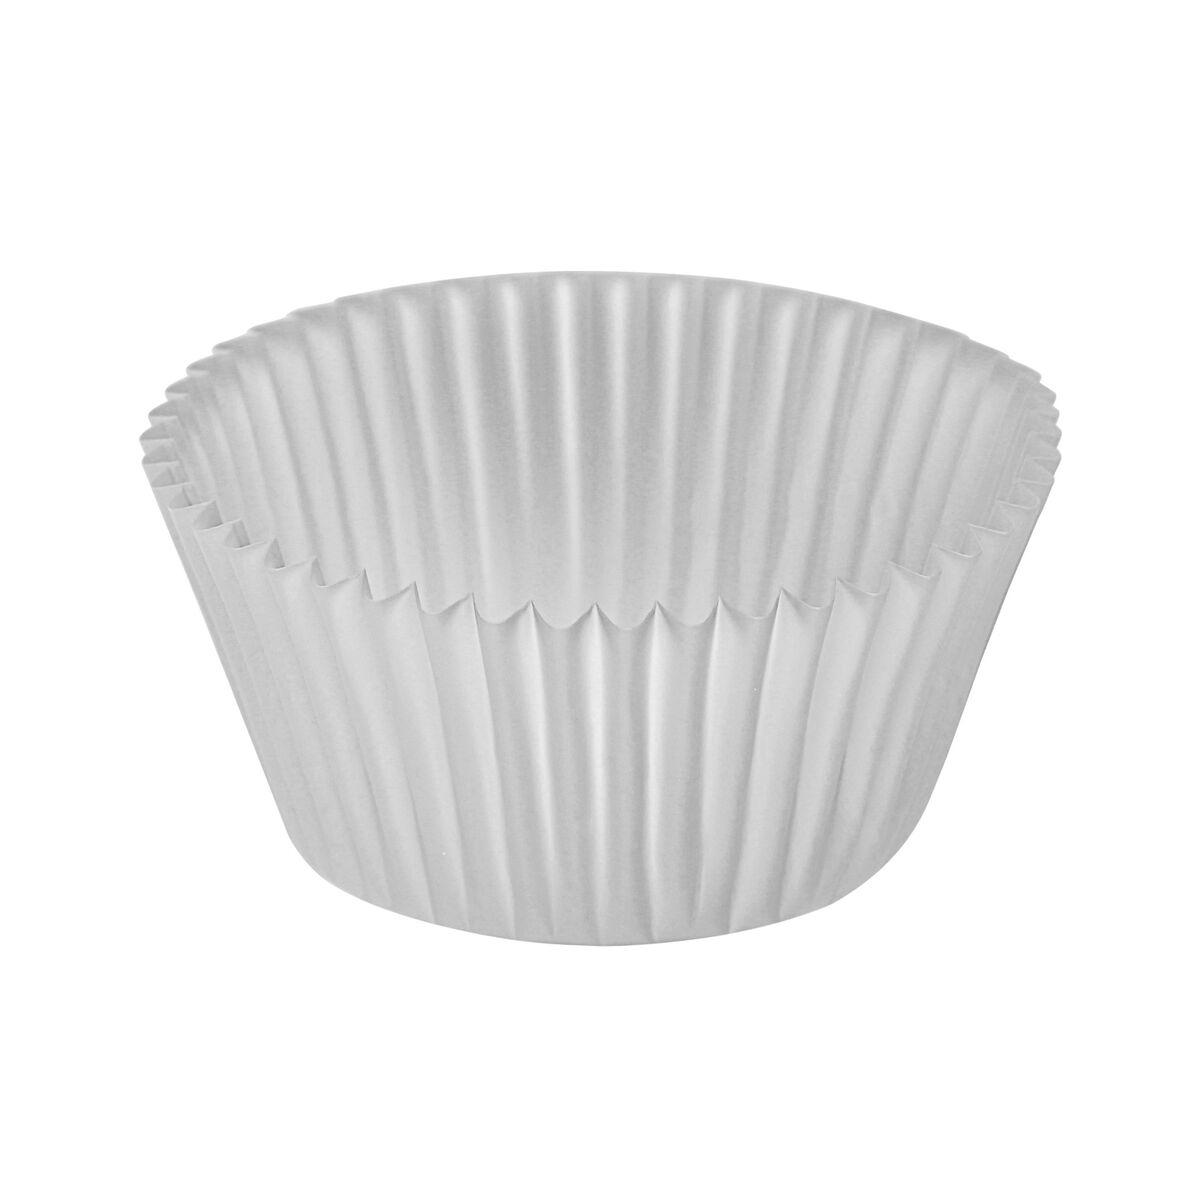 Muffinform Algon Weiß Einwegartikel 5 x 3,2 cm 60 Stück